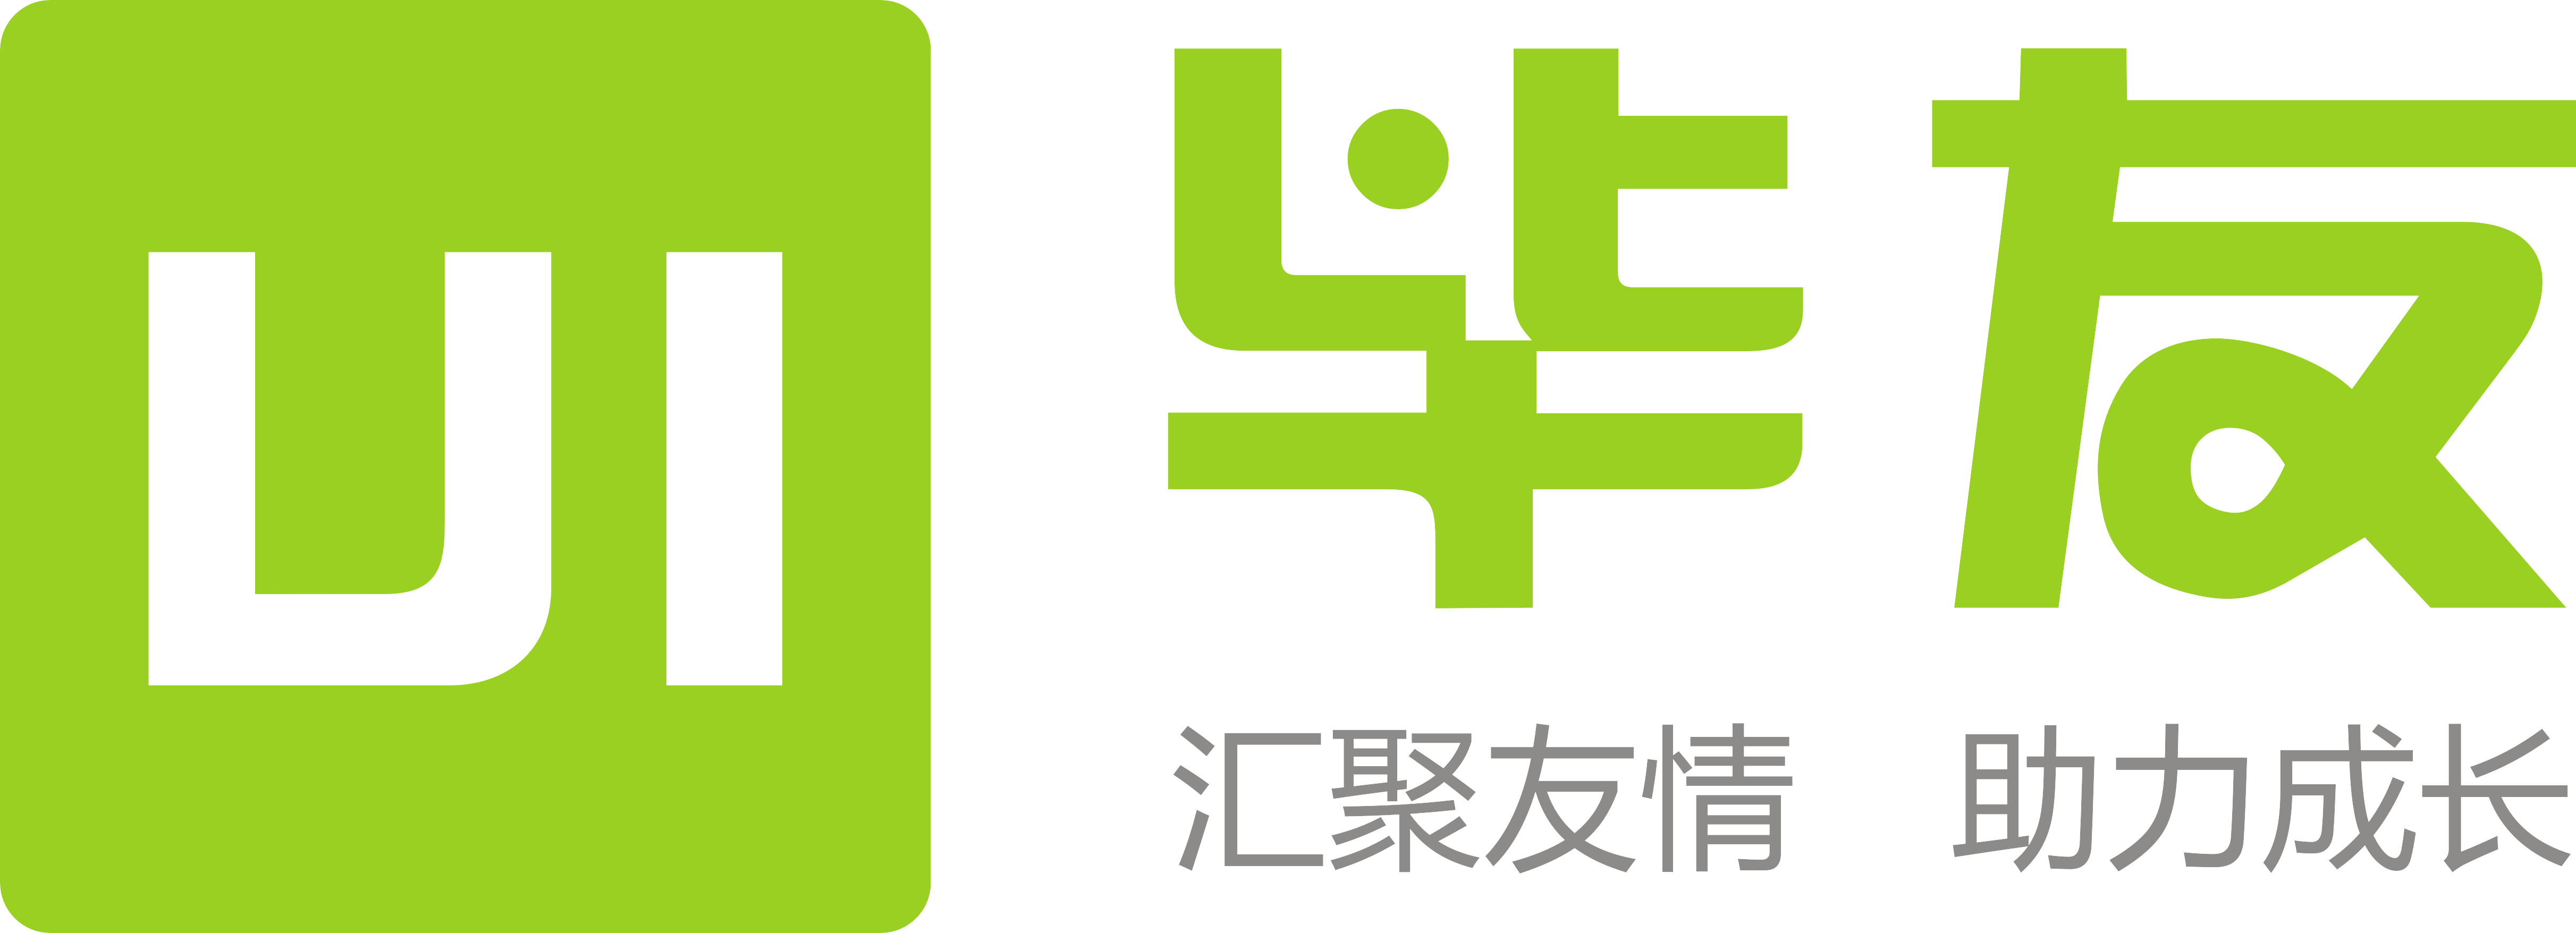 毕友最新logo.png